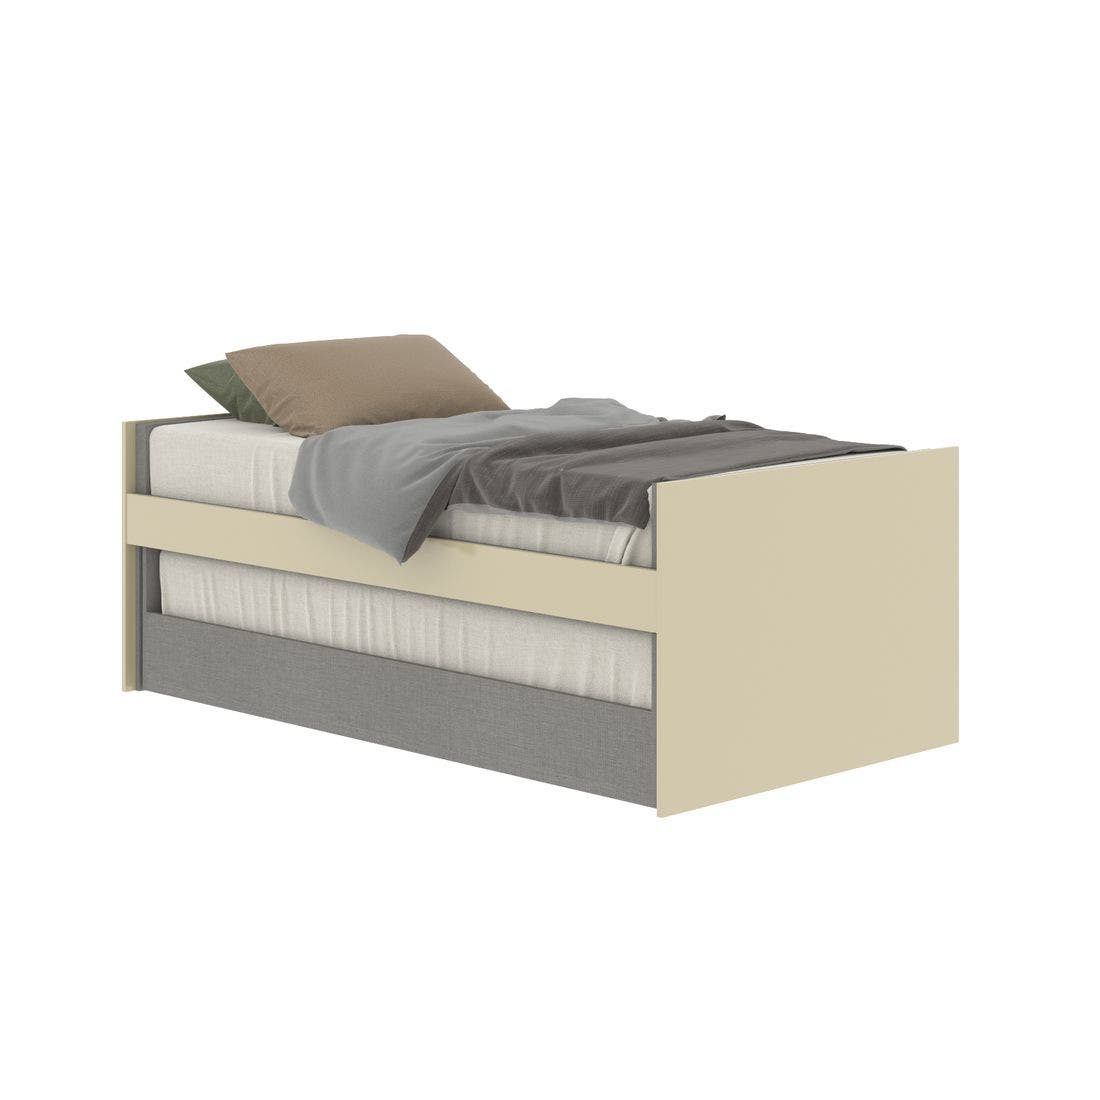 19203263-blisz-furniture-bedroom-furniture-beds-06